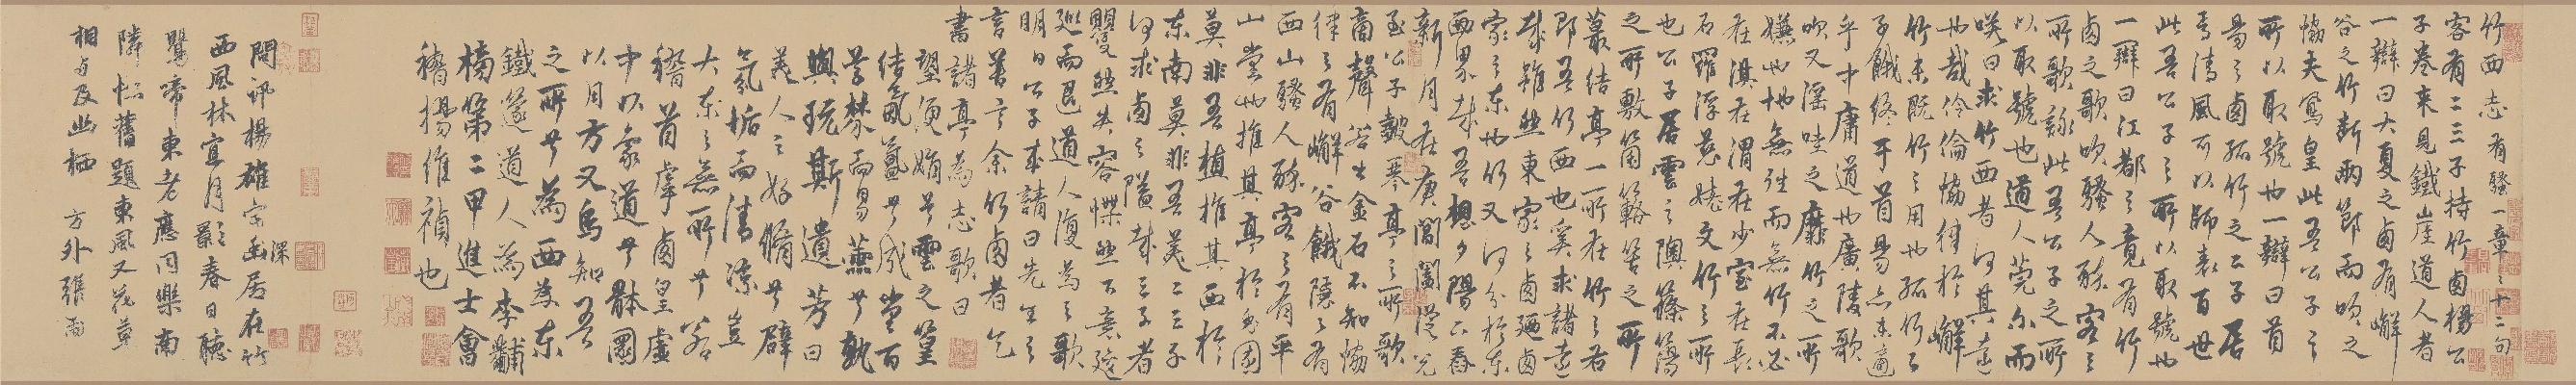 元 杨维帧 竹西草堂记题卷纸本27.4x81.2